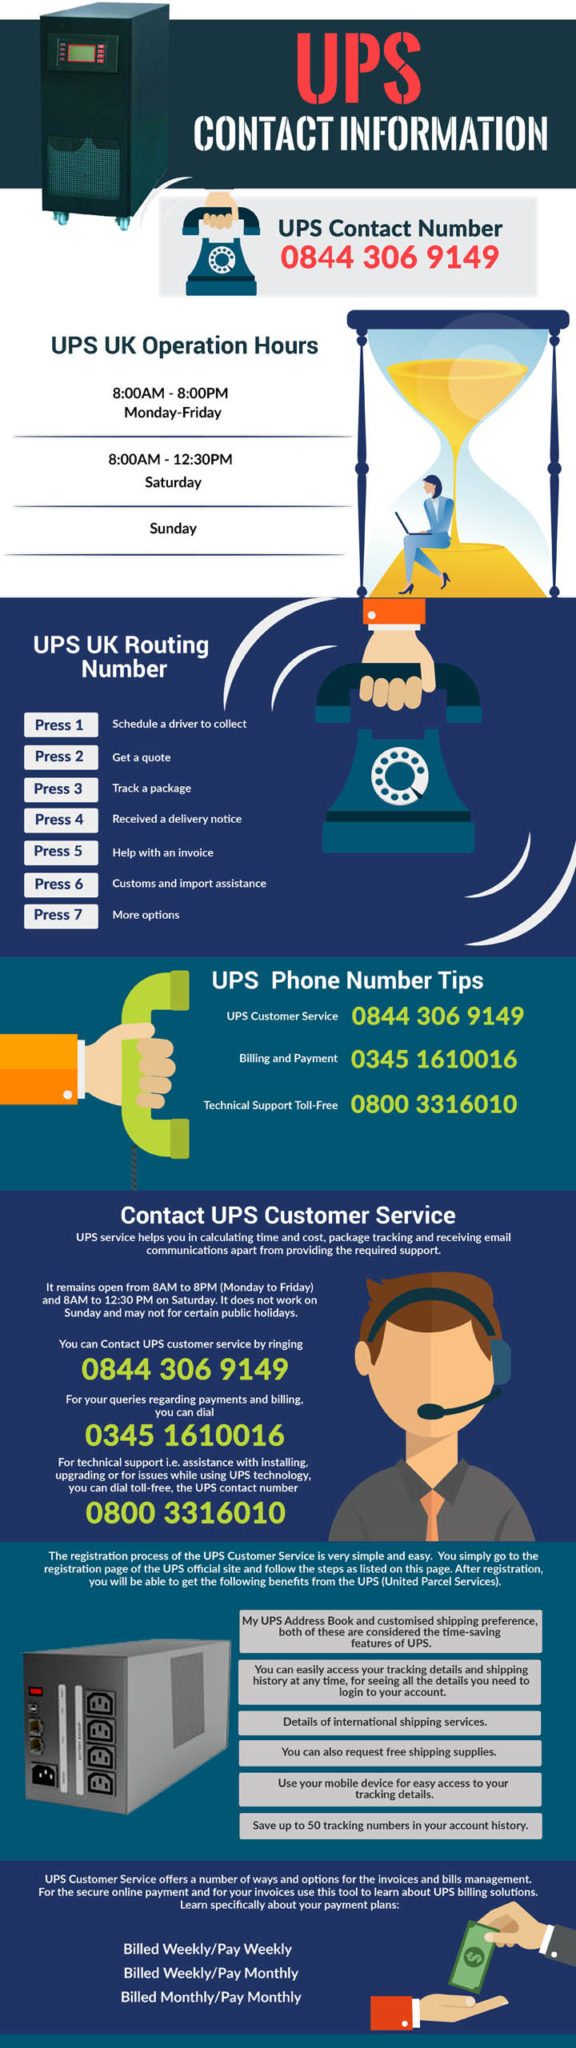 UPS Helpline